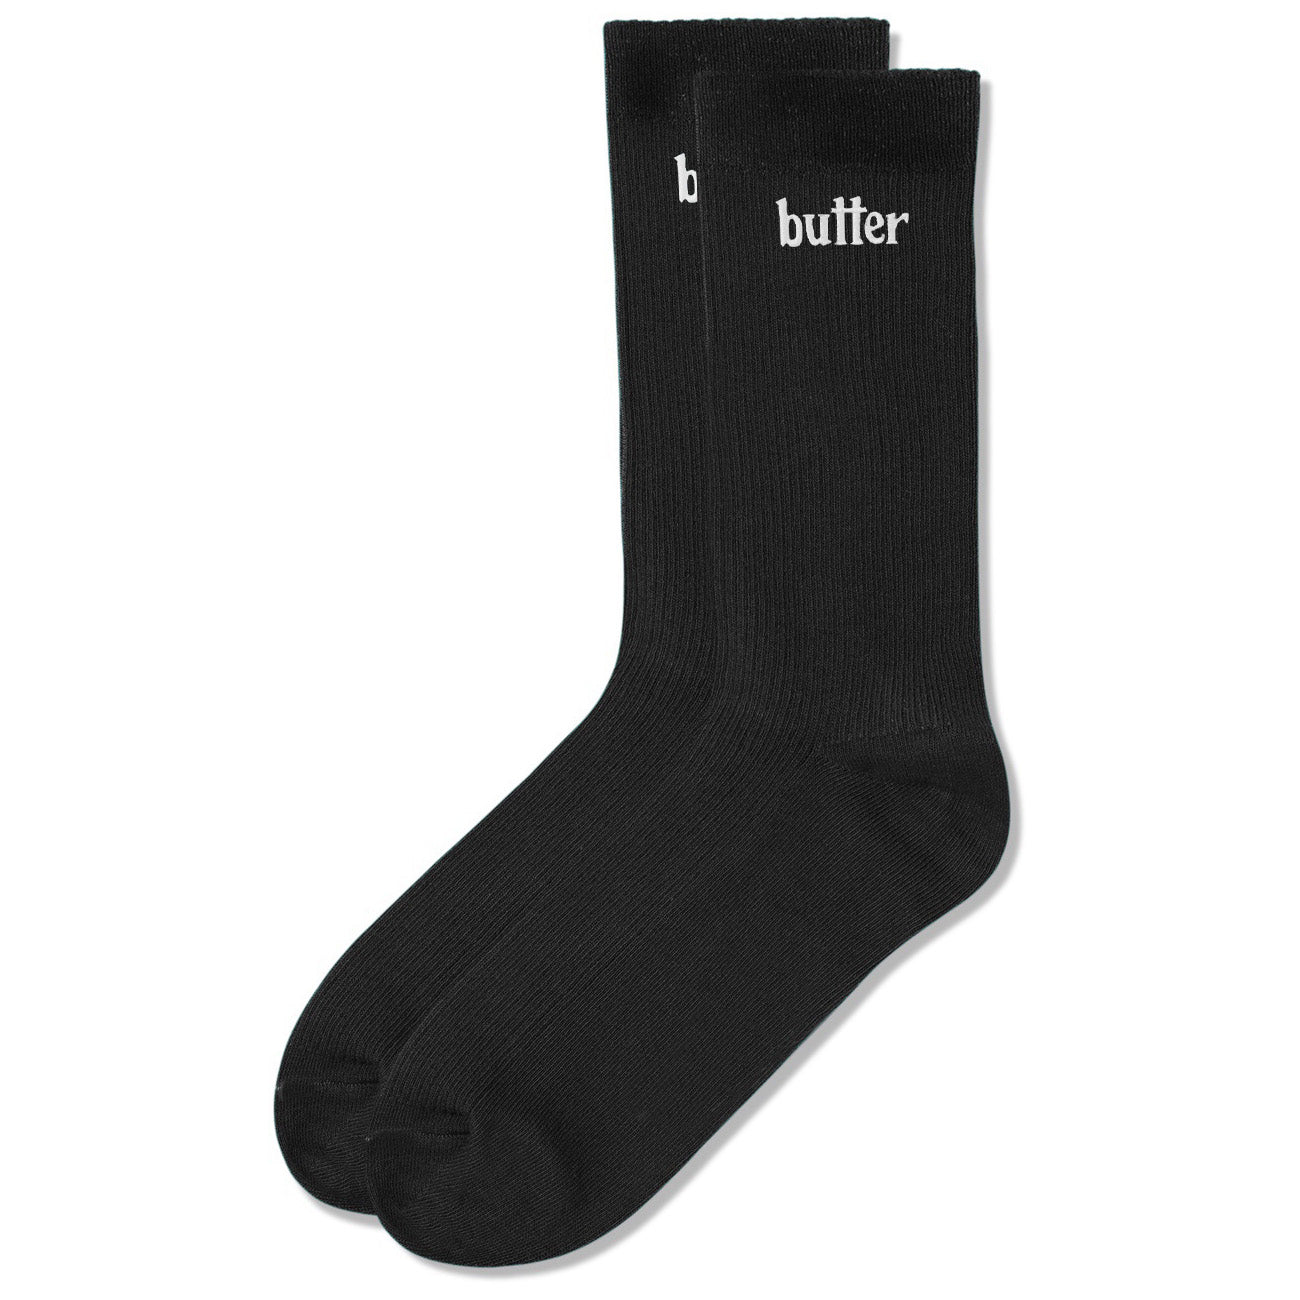 Butter Goods Basic Socks Black